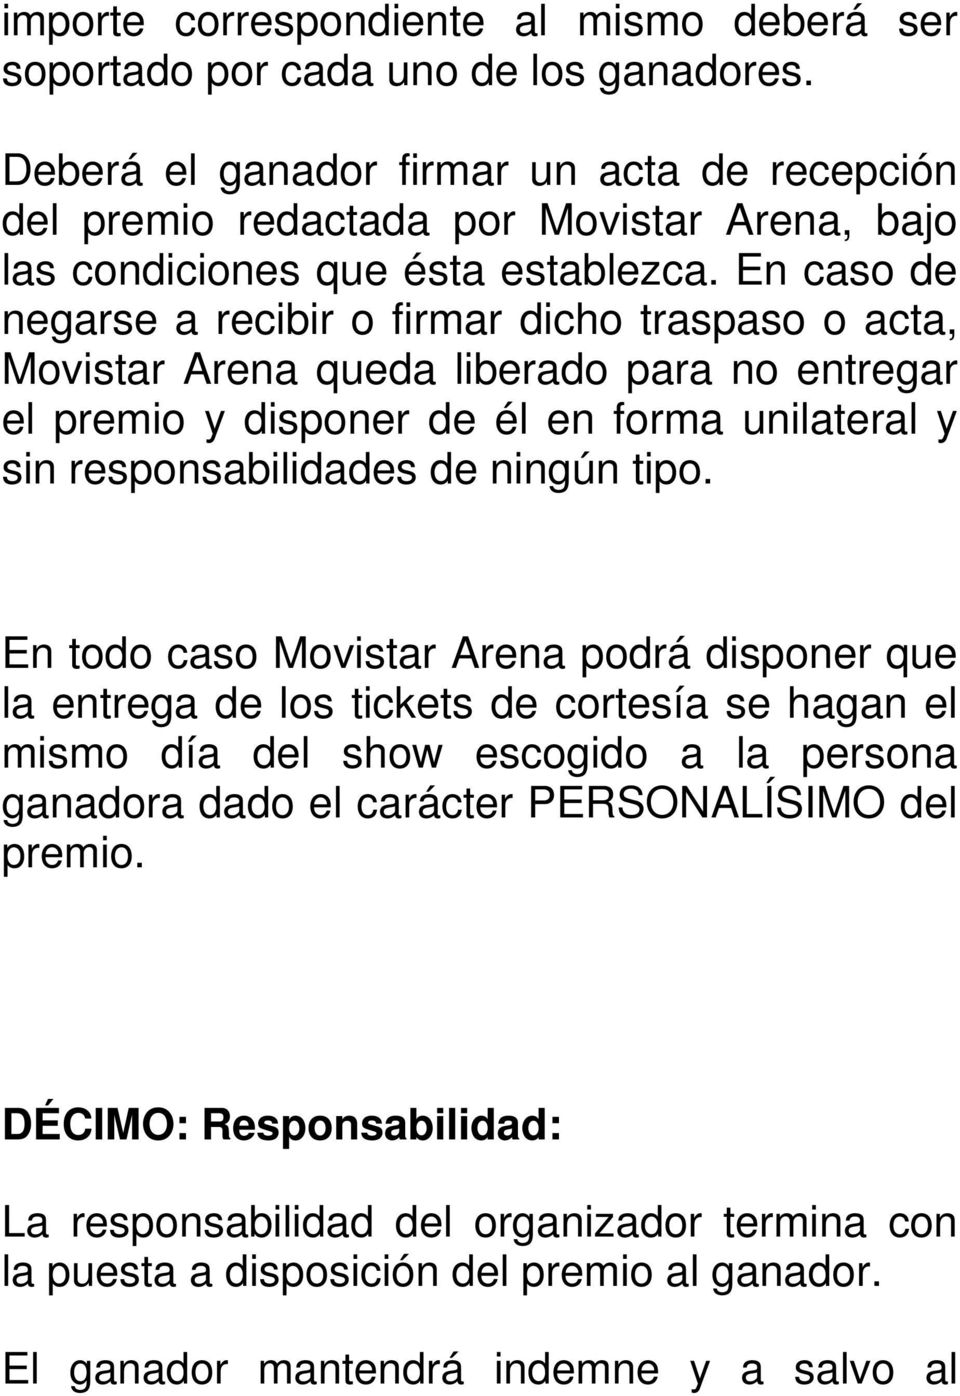 En caso de negarse a recibir o firmar dicho traspaso o acta, Movistar Arena queda liberado para no entregar el premio y disponer de él en forma unilateral y sin responsabilidades de ningún